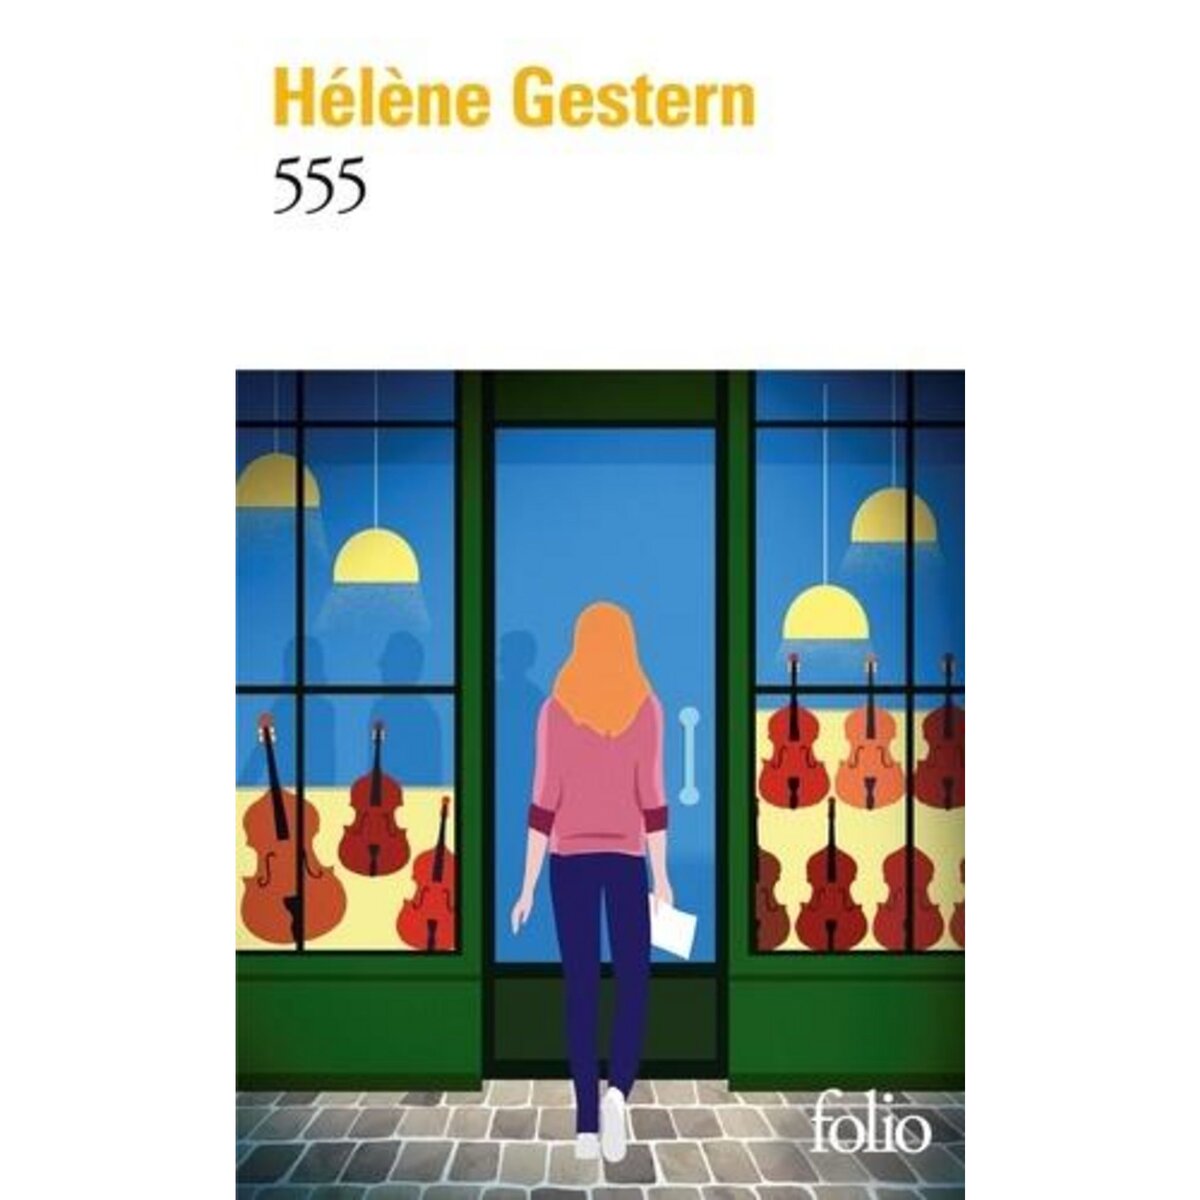  555, Gestern Hélène